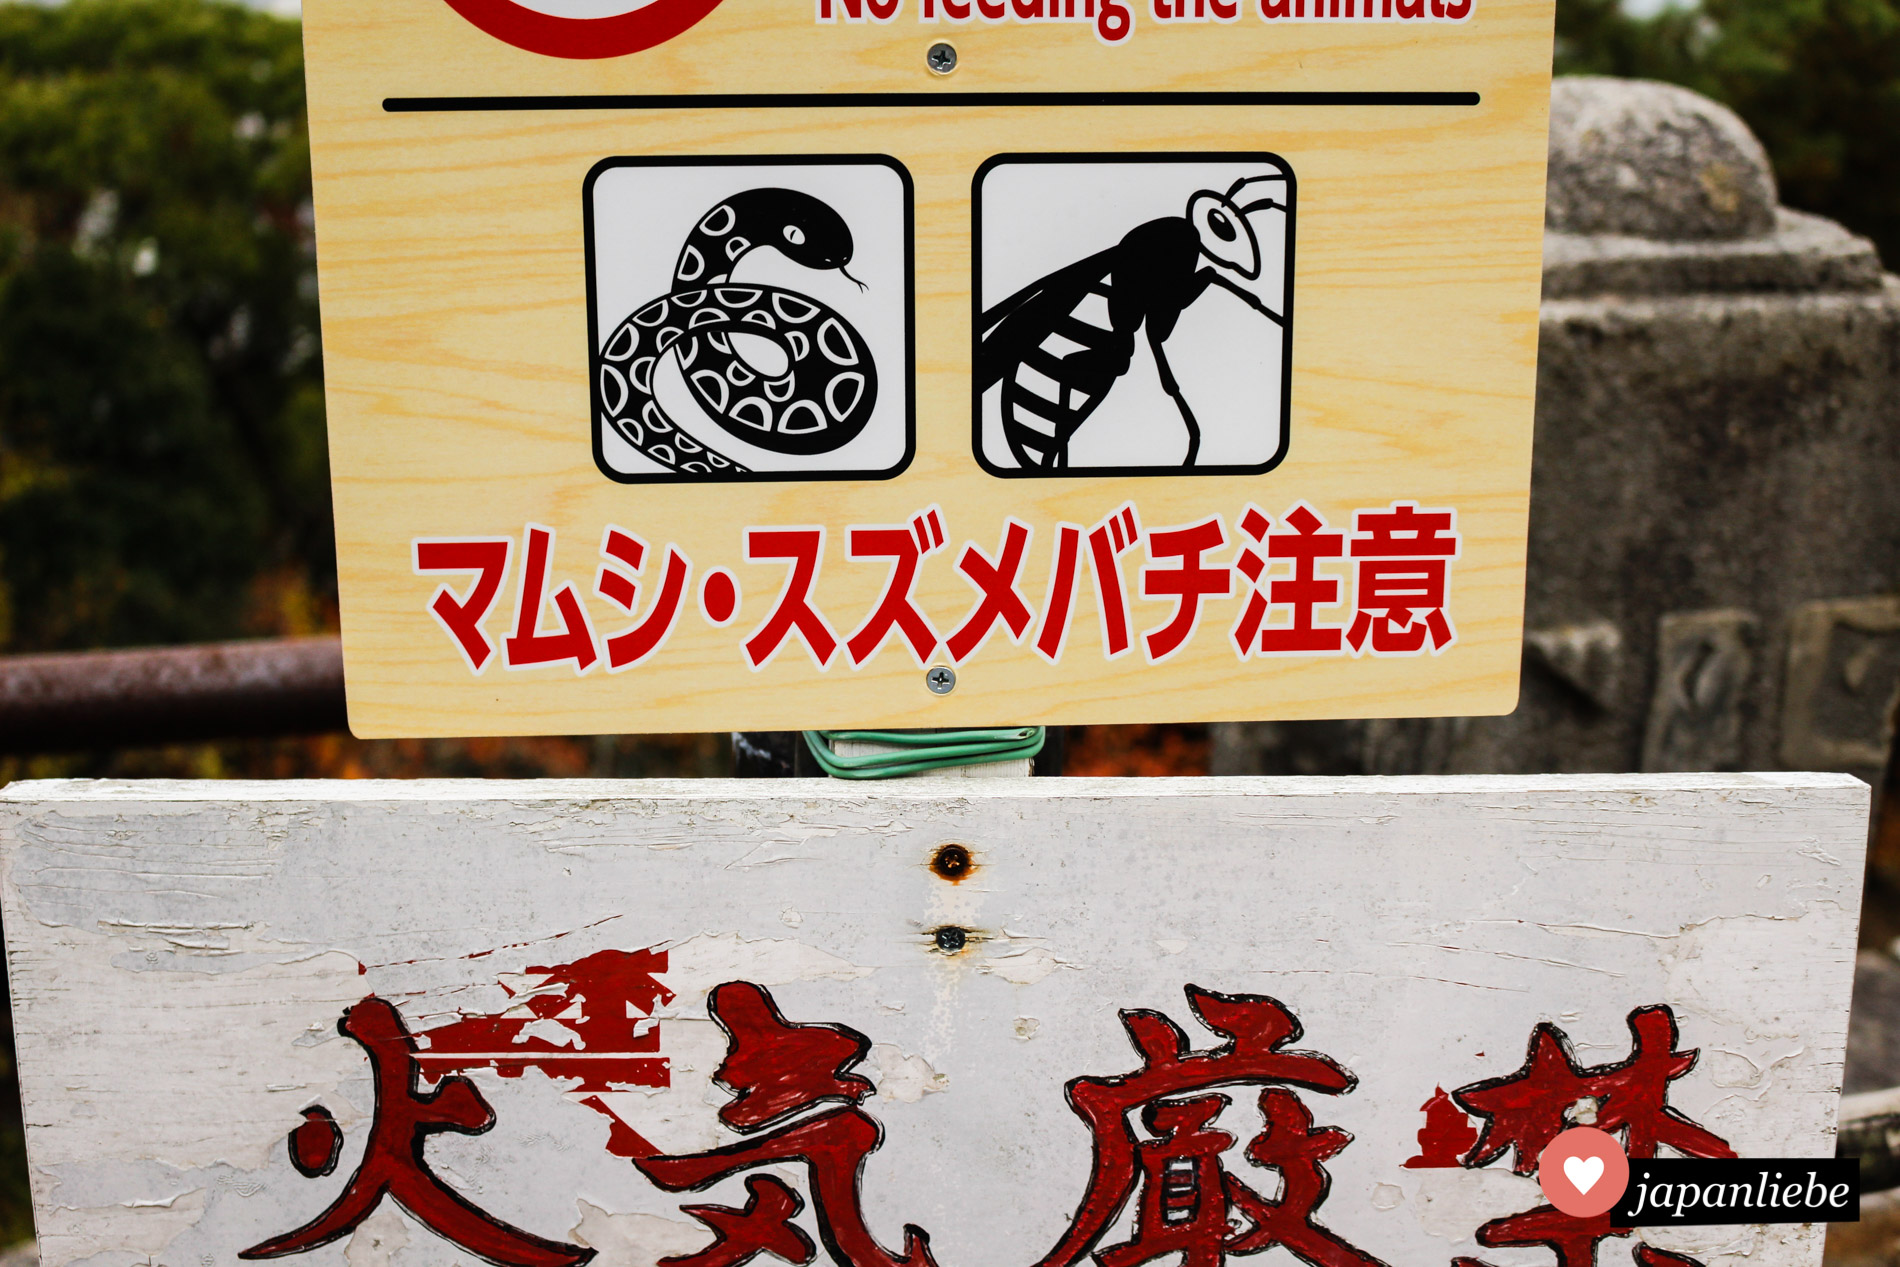 Mit Schlangen und Hornissen ist in Japan nicht zu spaßen.